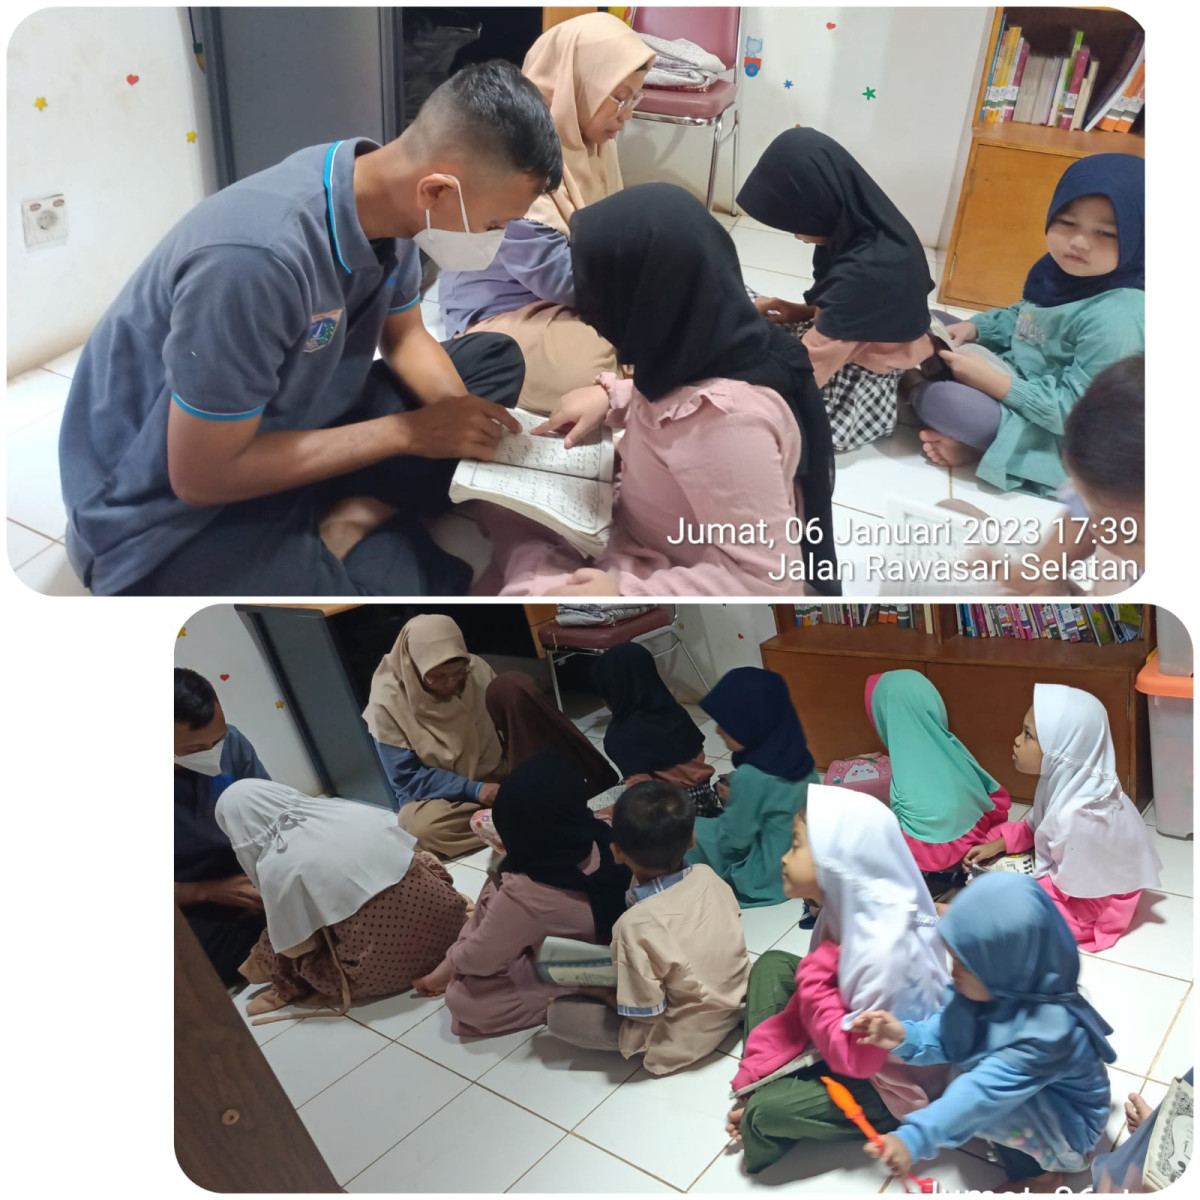 Kegiatan magrib mengaji bersama anak-anak di RPTRA Anggrek